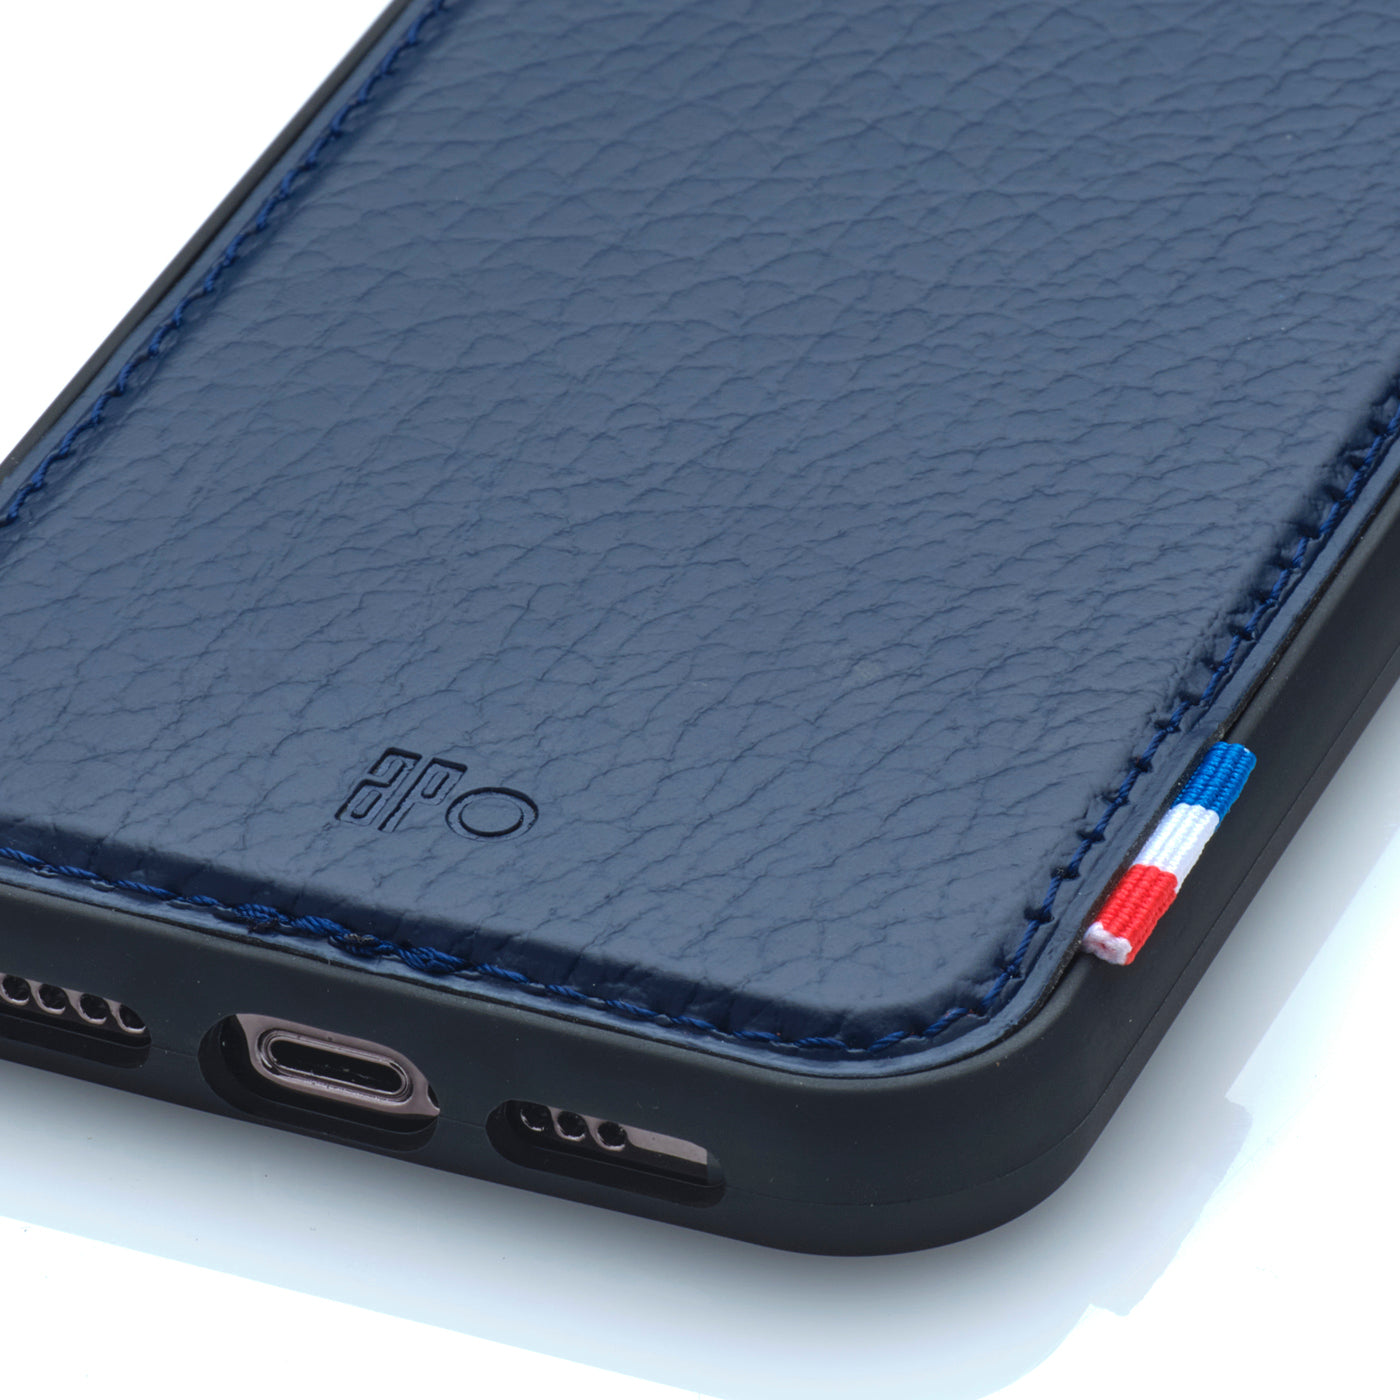 SAM - Coque iPhone 12 / 12 Pro en cuir recyclé - Bleu